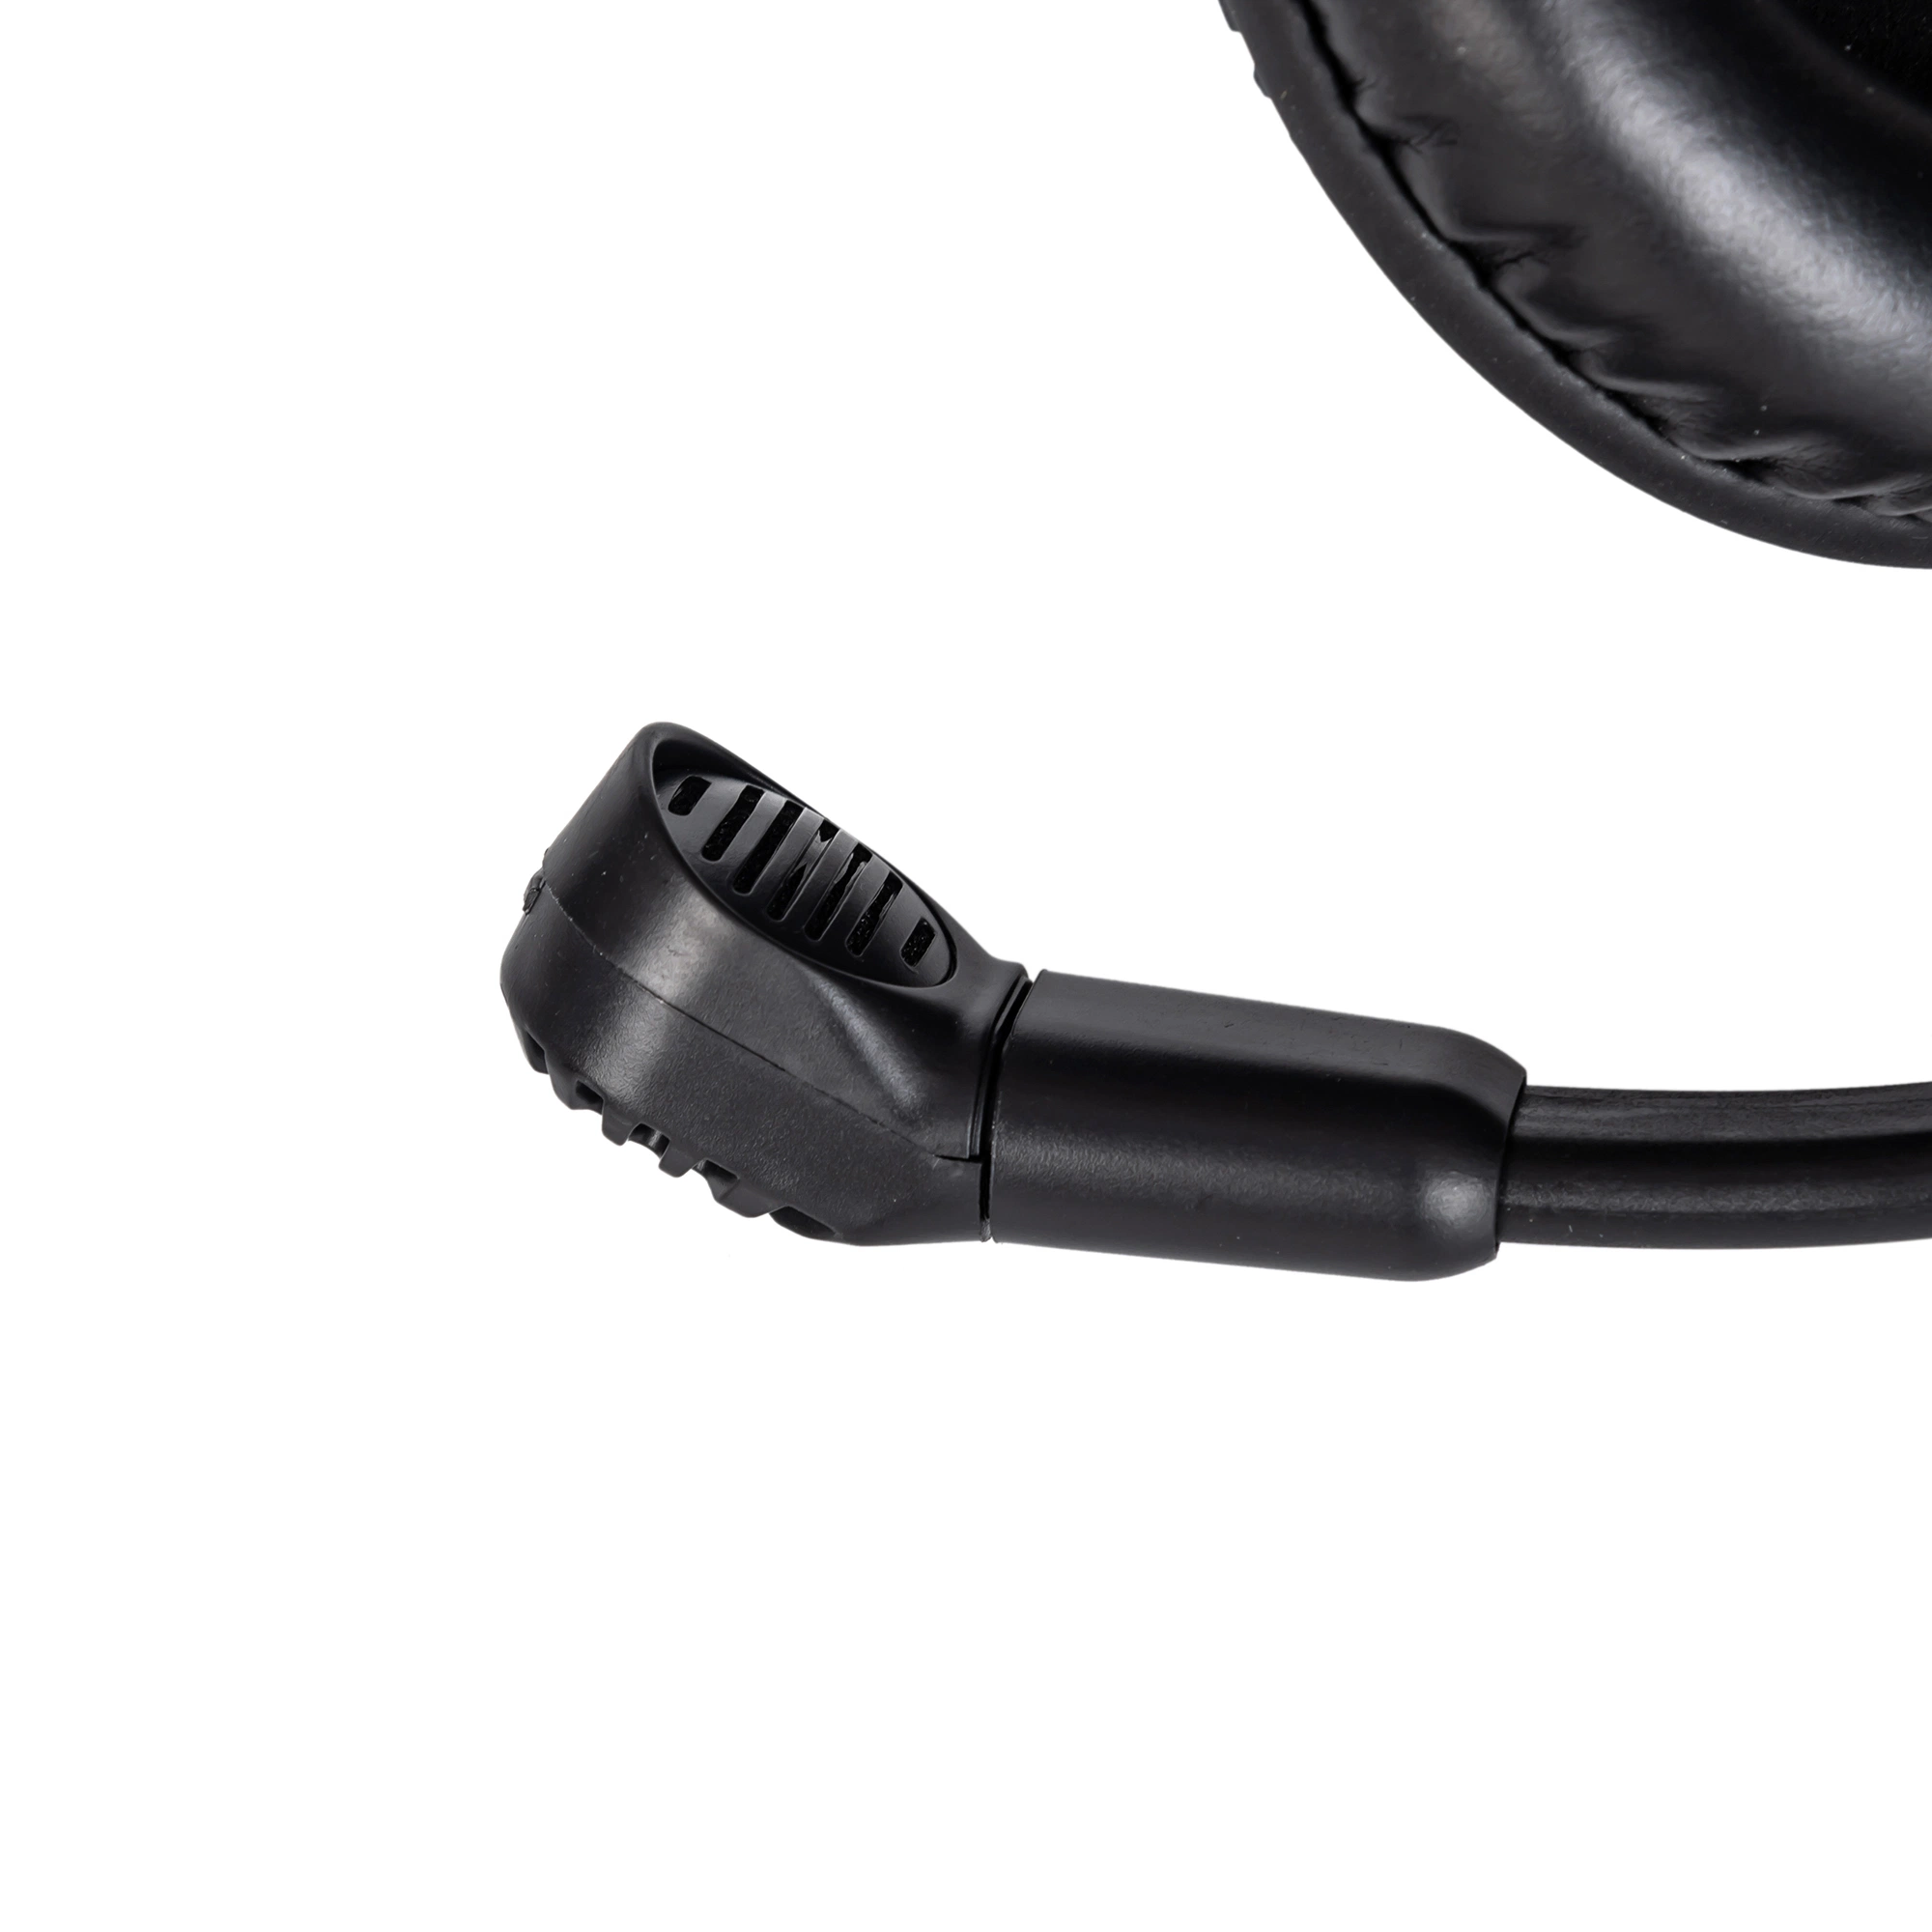 Casque Headset Headphone 3.5mm Language Lab this RoHS OEM disponibles pour les comprimés et les Ipad lab entreprise câblé antibruit EAR Professionnels de la tête de crochet